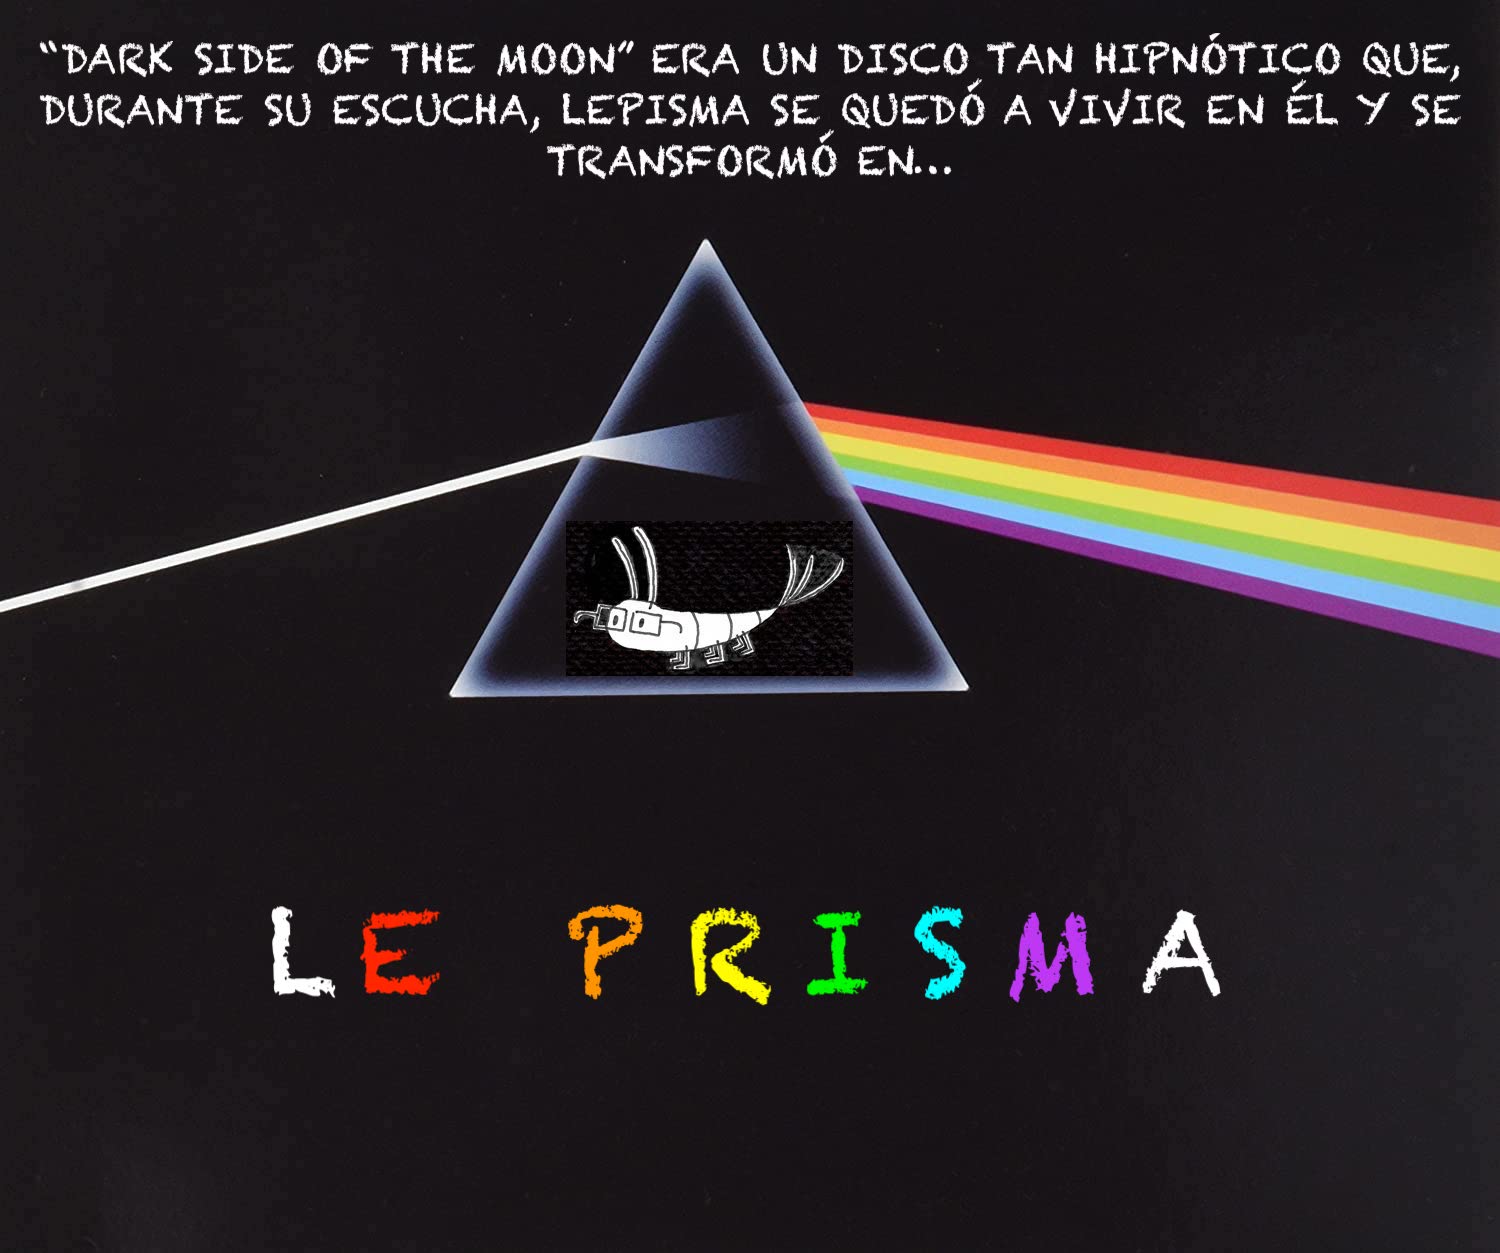 Le Prisma y Pink Floyd